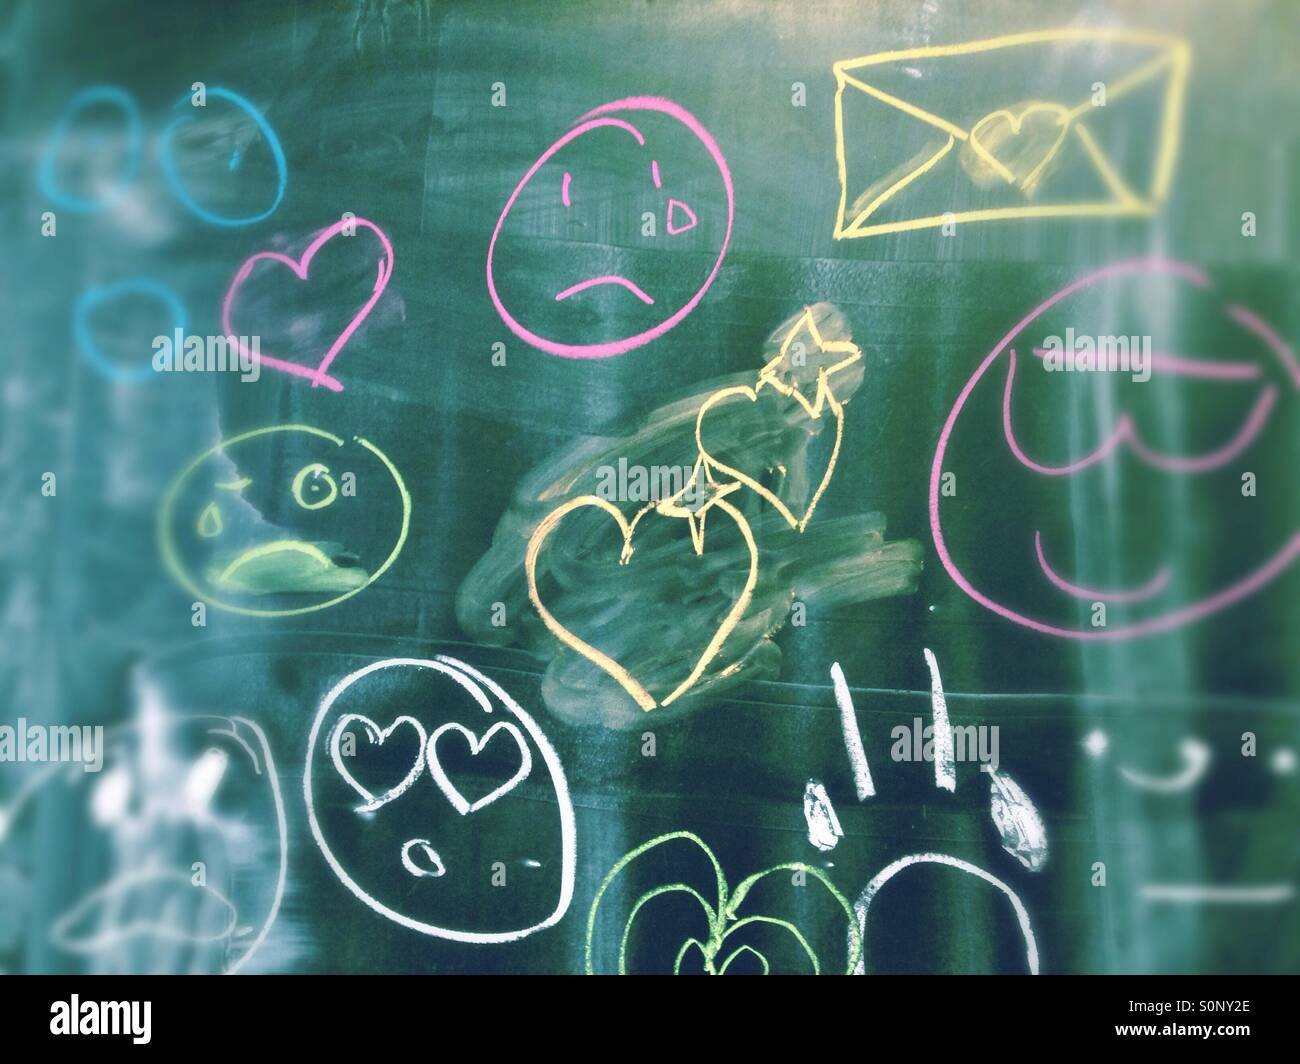 Analógico y emoticonos emojis escrito en una pizarra en la escuela con tiza en diferentes colores. Foto de stock